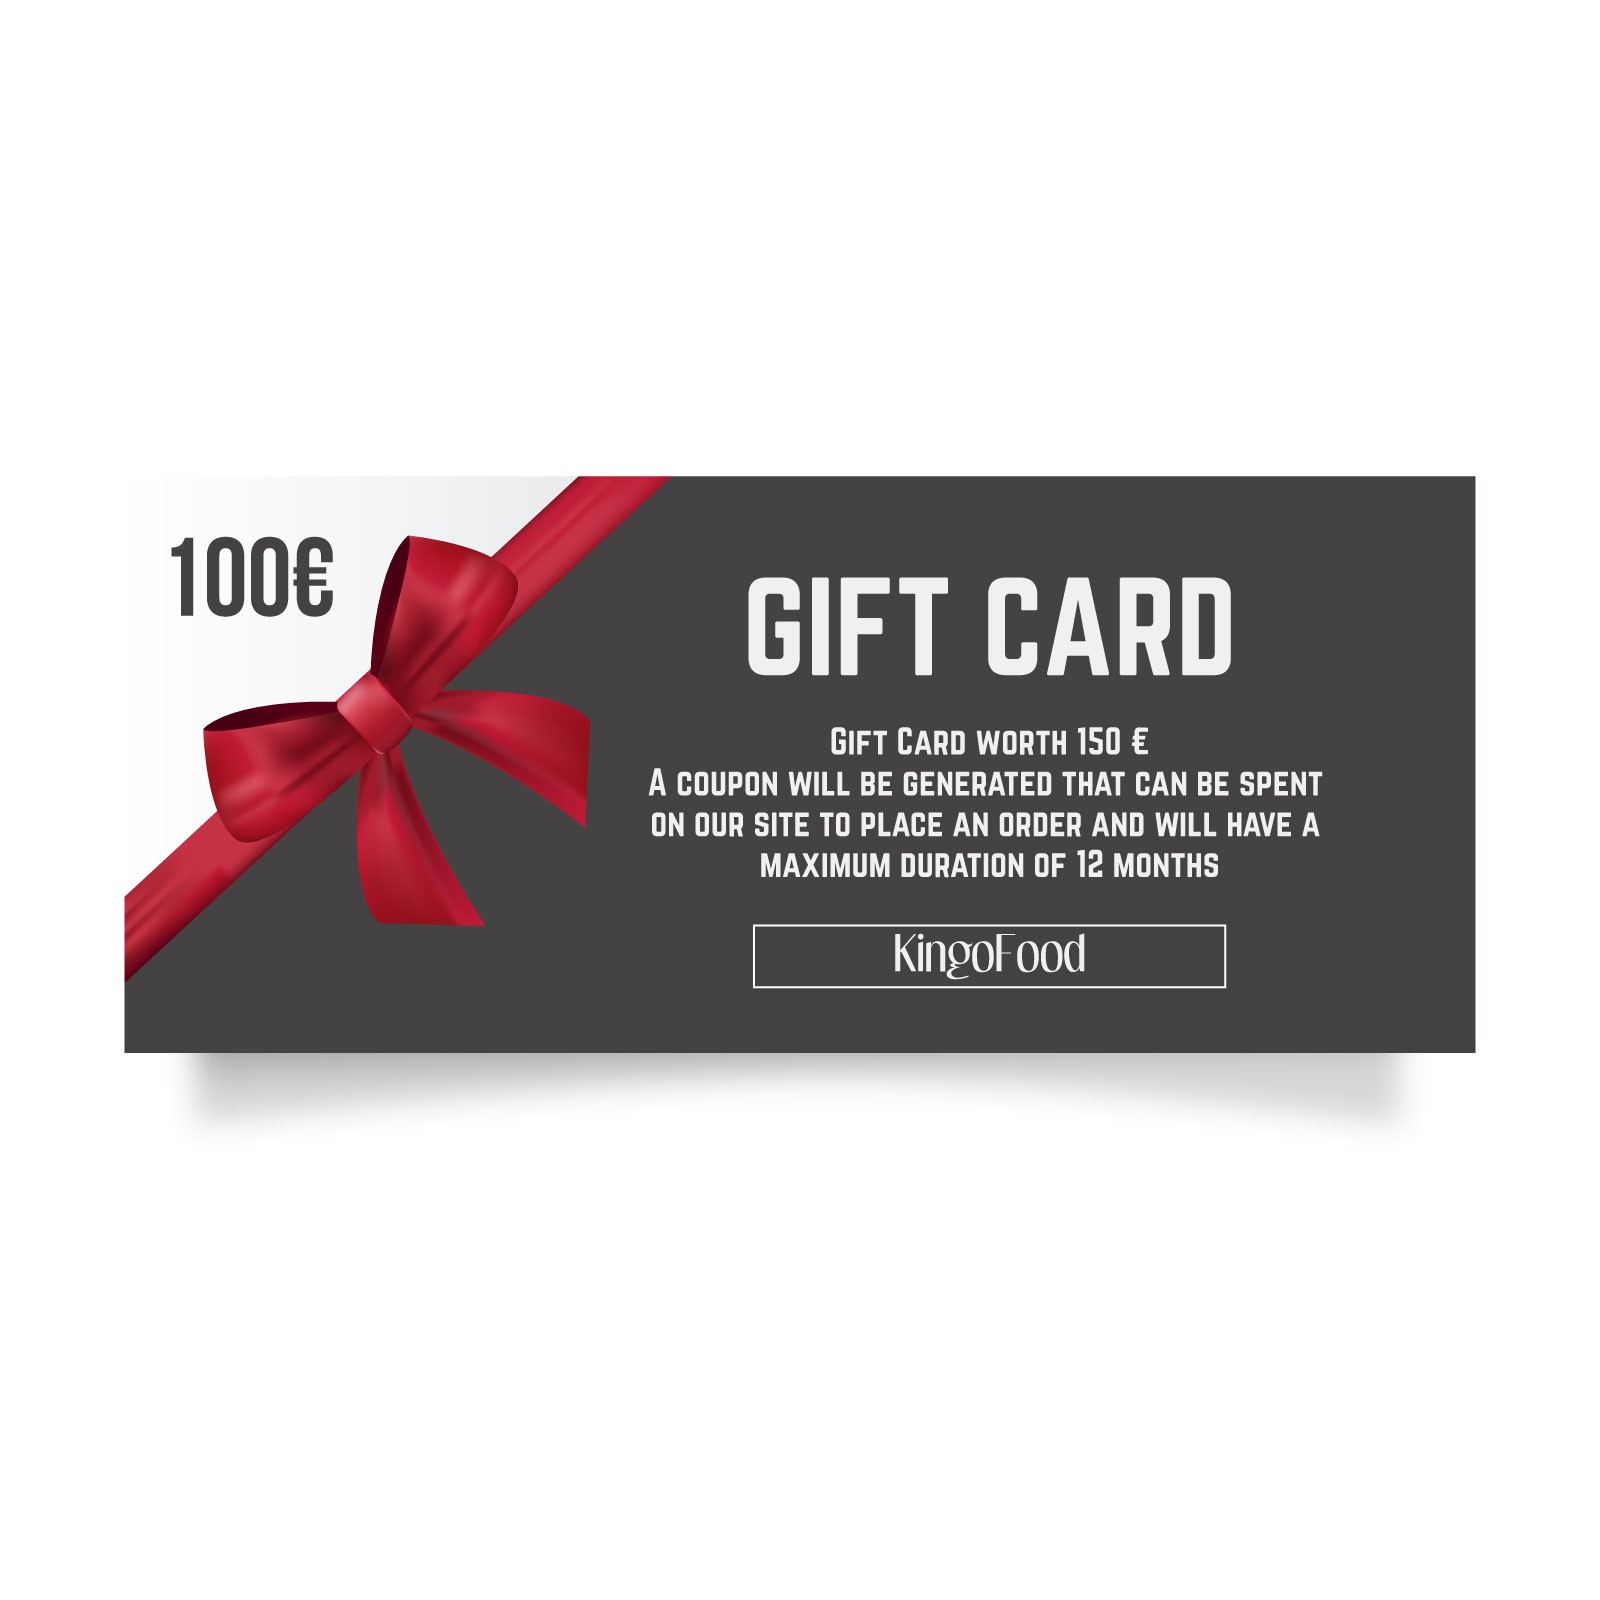 Gift Card del valore di 100 €
Verrà generato un coupon che potrà essere speso sul sito www.kingofood.com per effettuare un ordine ed avrà la durata massima di 24 mesi.
Per altre informazioni potete contattarci!